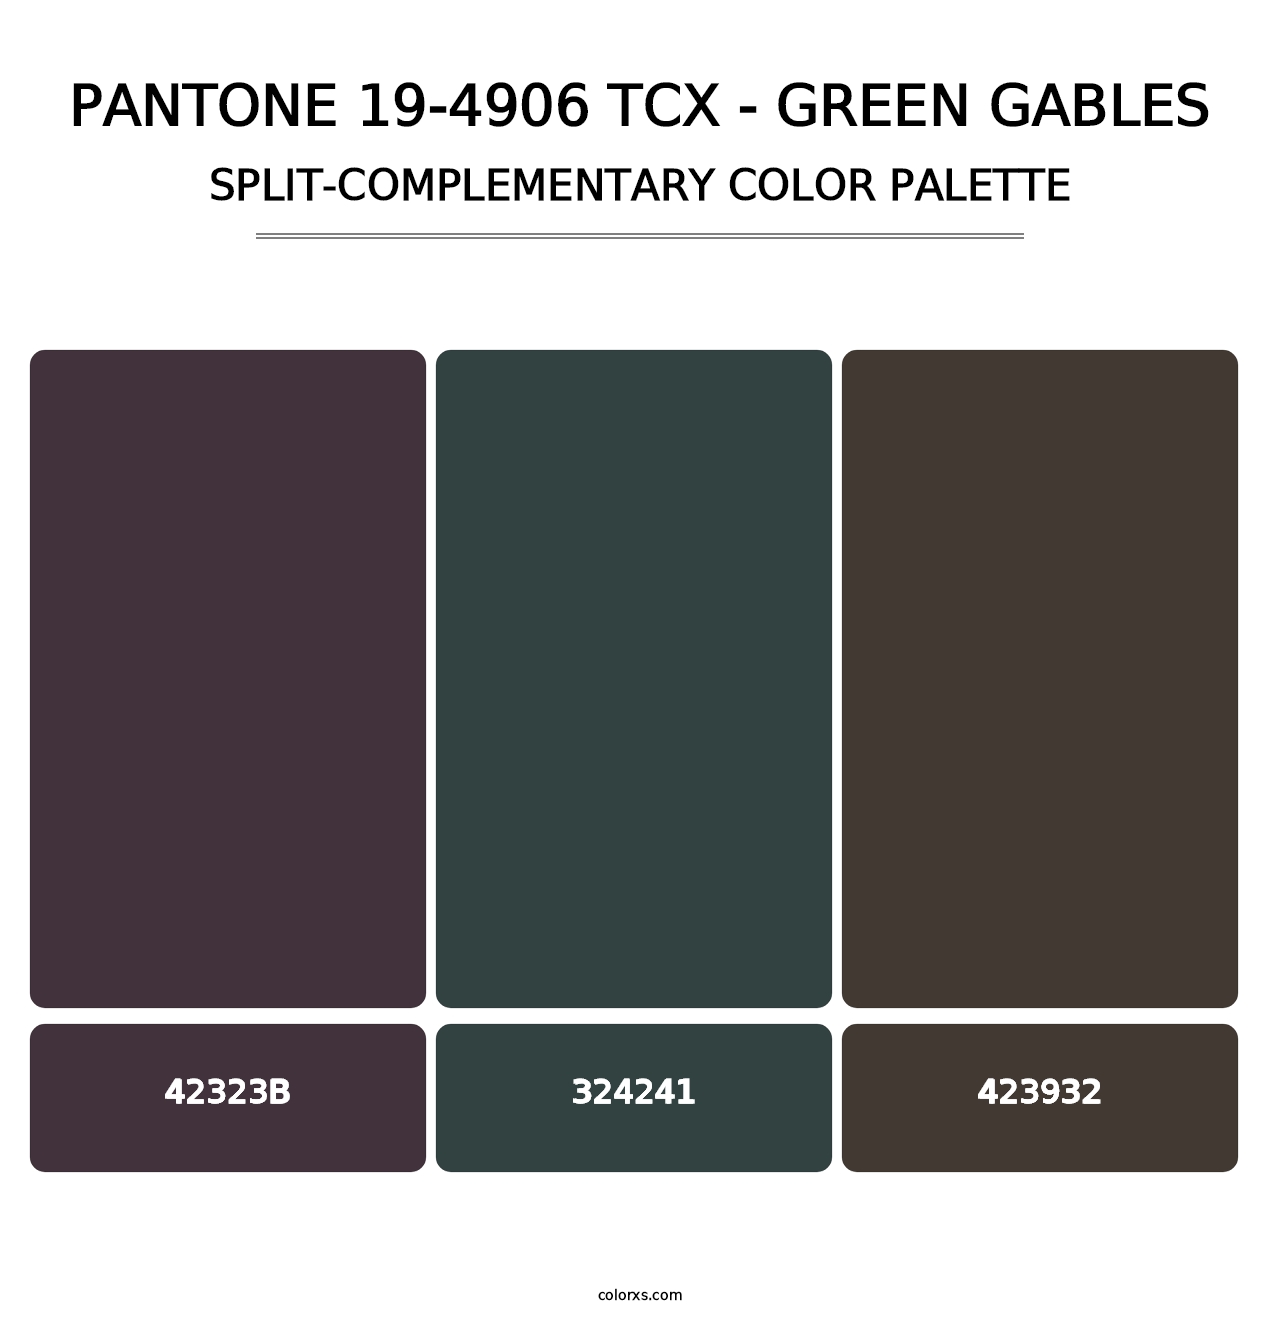 PANTONE 19-4906 TCX - Green Gables - Split-Complementary Color Palette